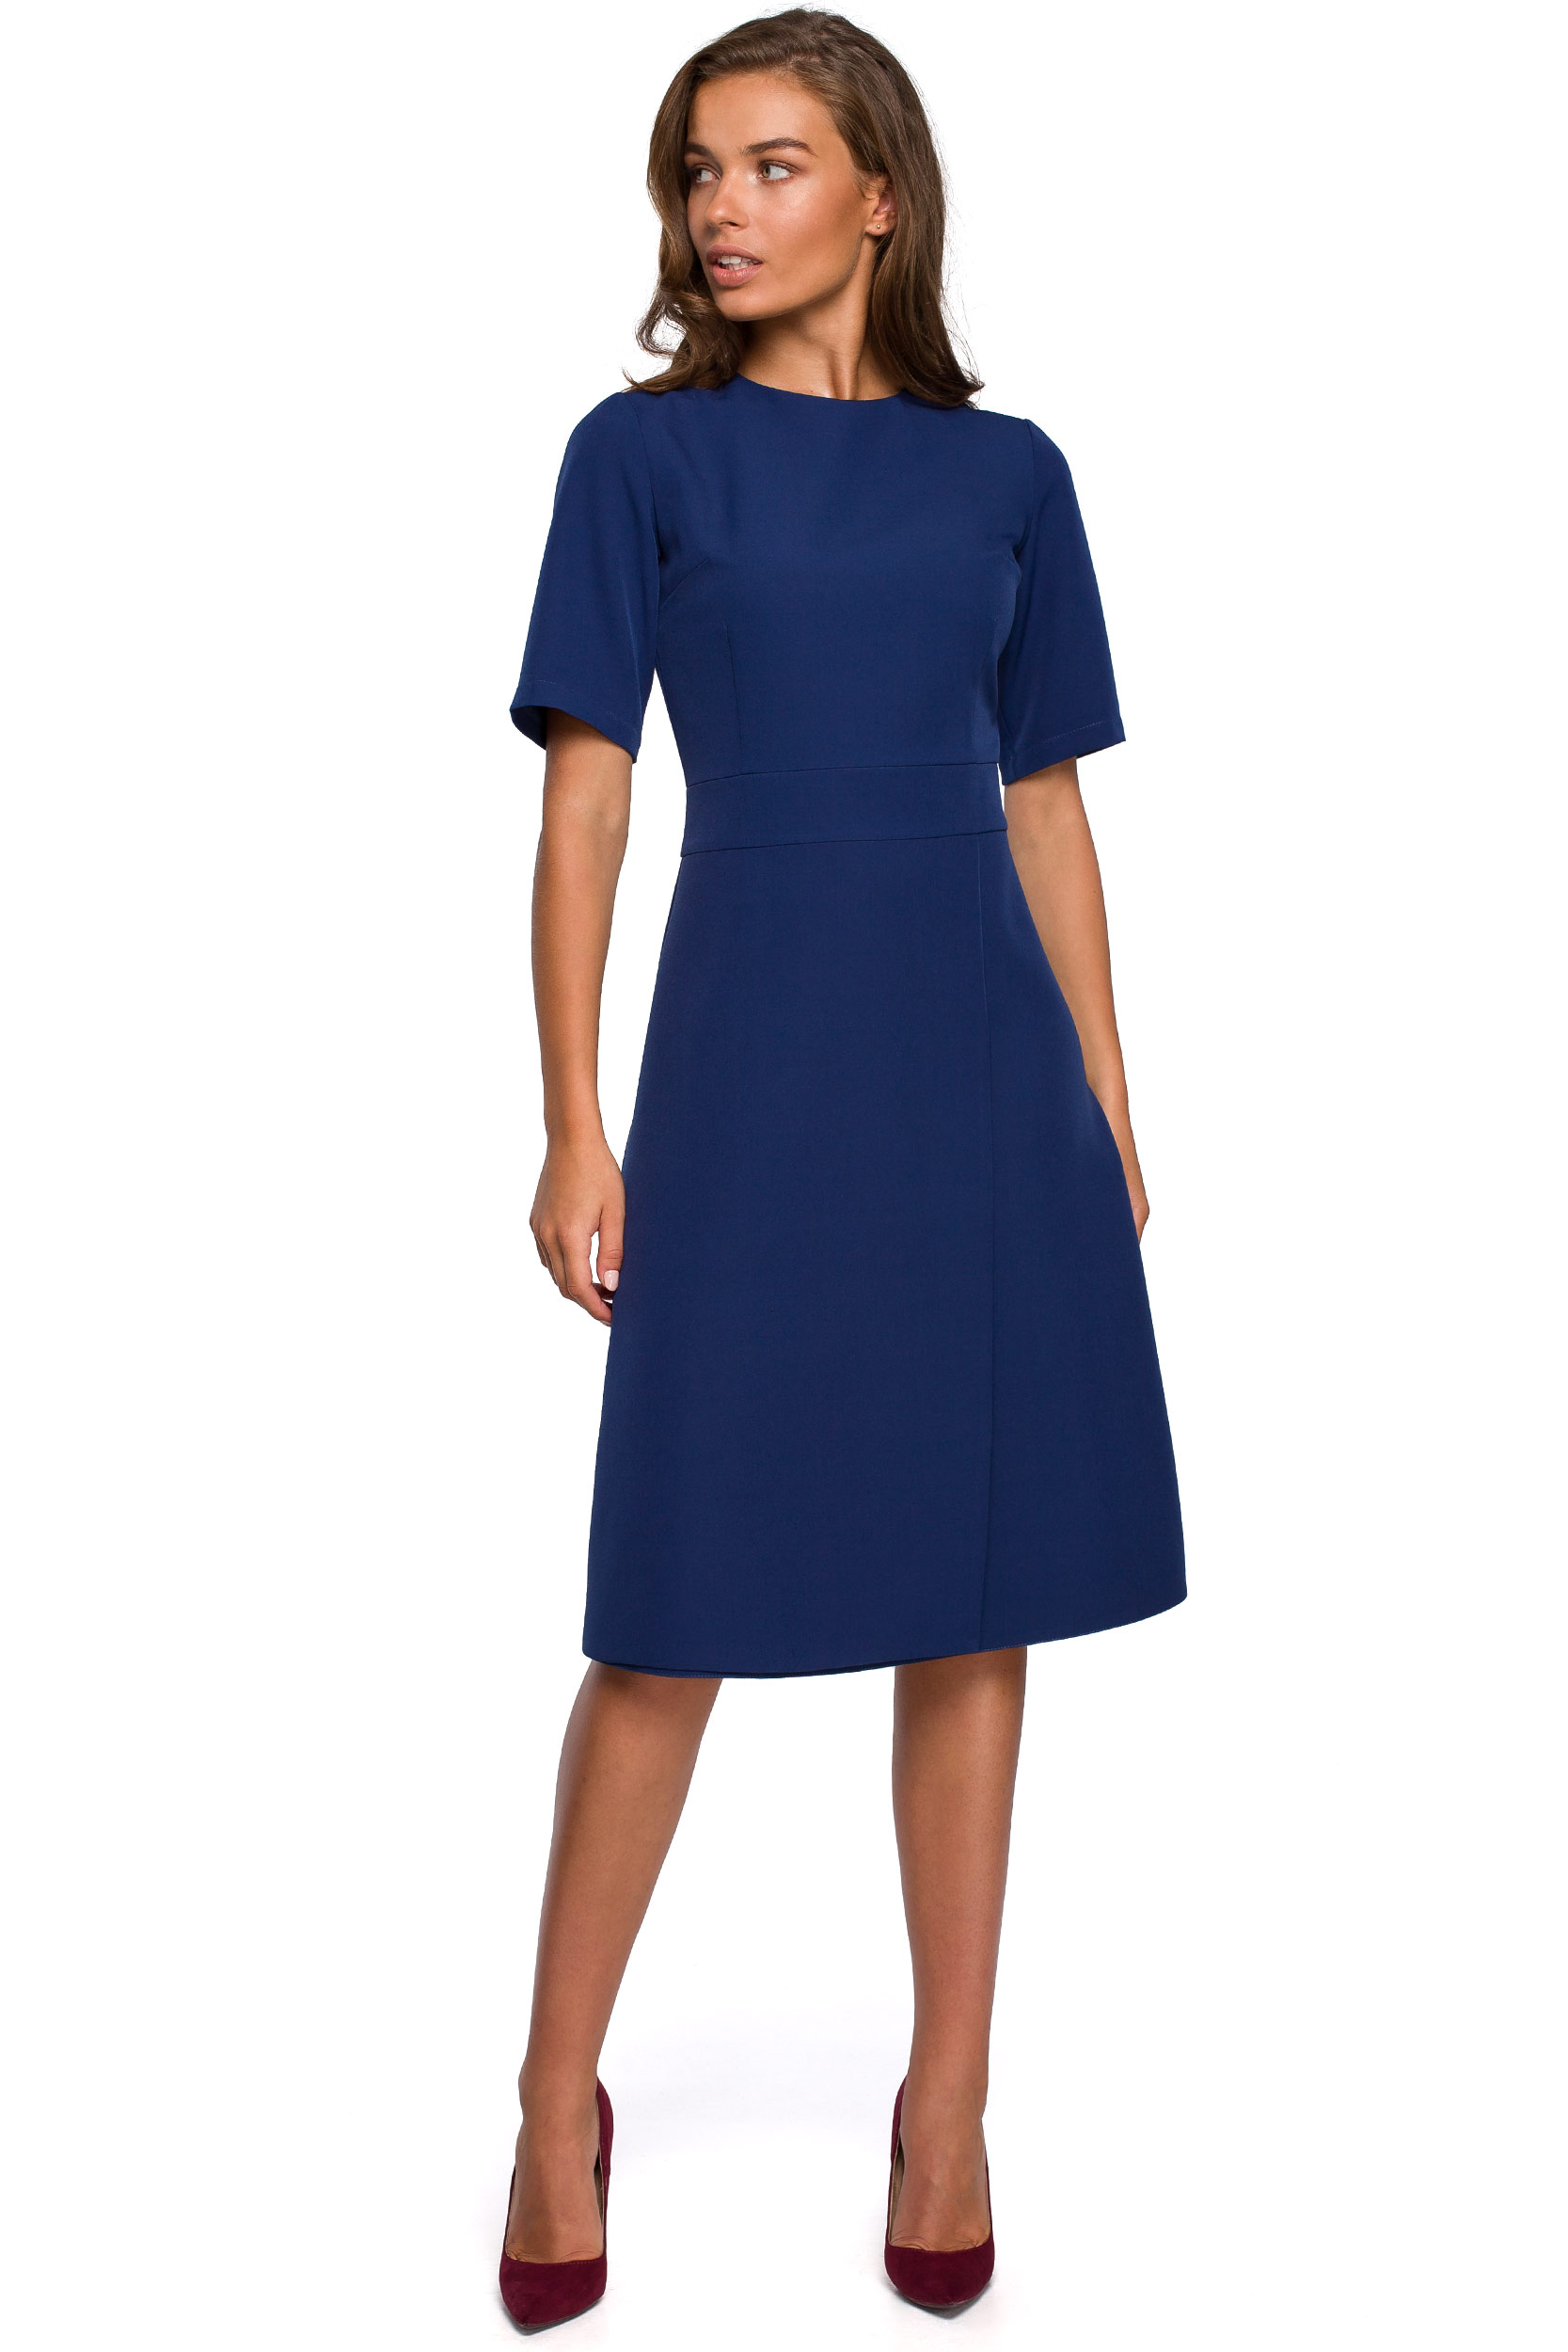 Levně Stylove Woman's Dress S240 Navy Blue